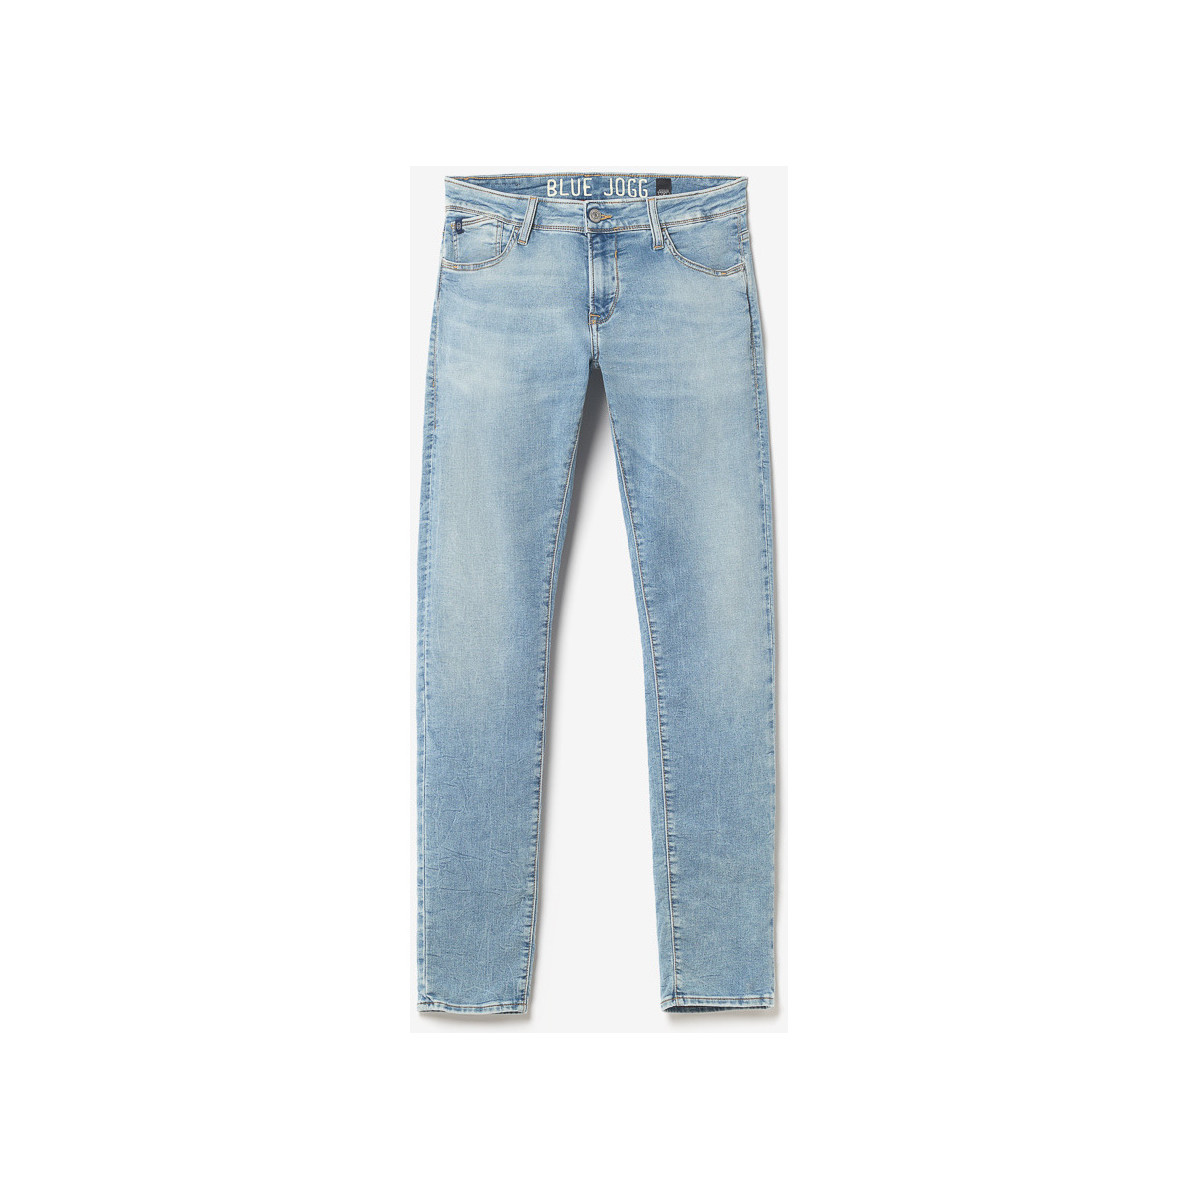 Le Temps des Cerises Bleu Jogg 700/11 adjusted jeans bleu WUeW9lxu